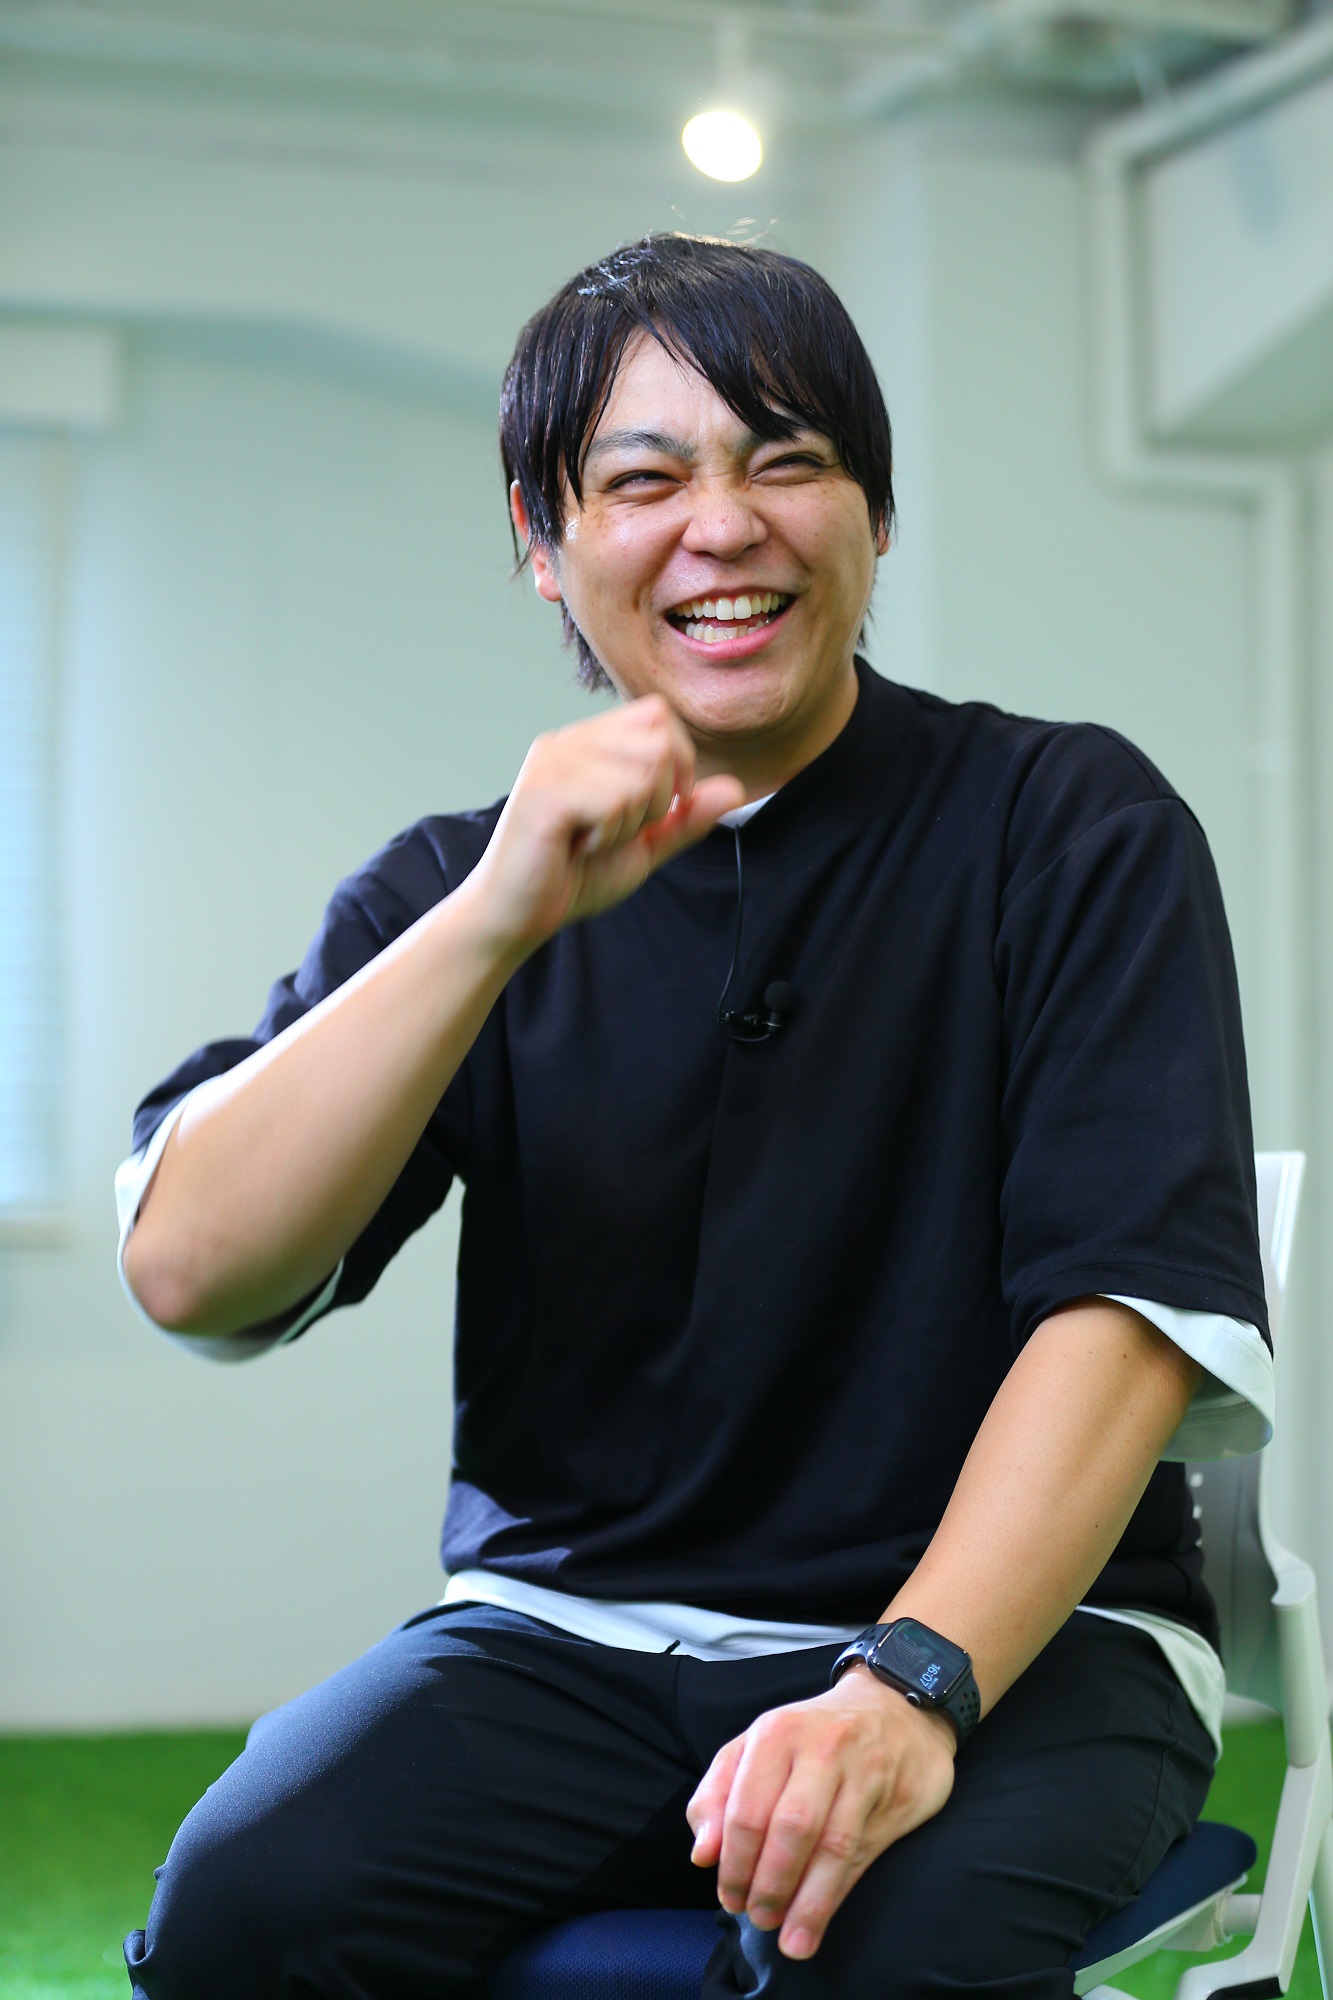 野球部出身者は営業向き 高橋由伸さん、新ビジネスに感心 | OVO [オーヴォ]